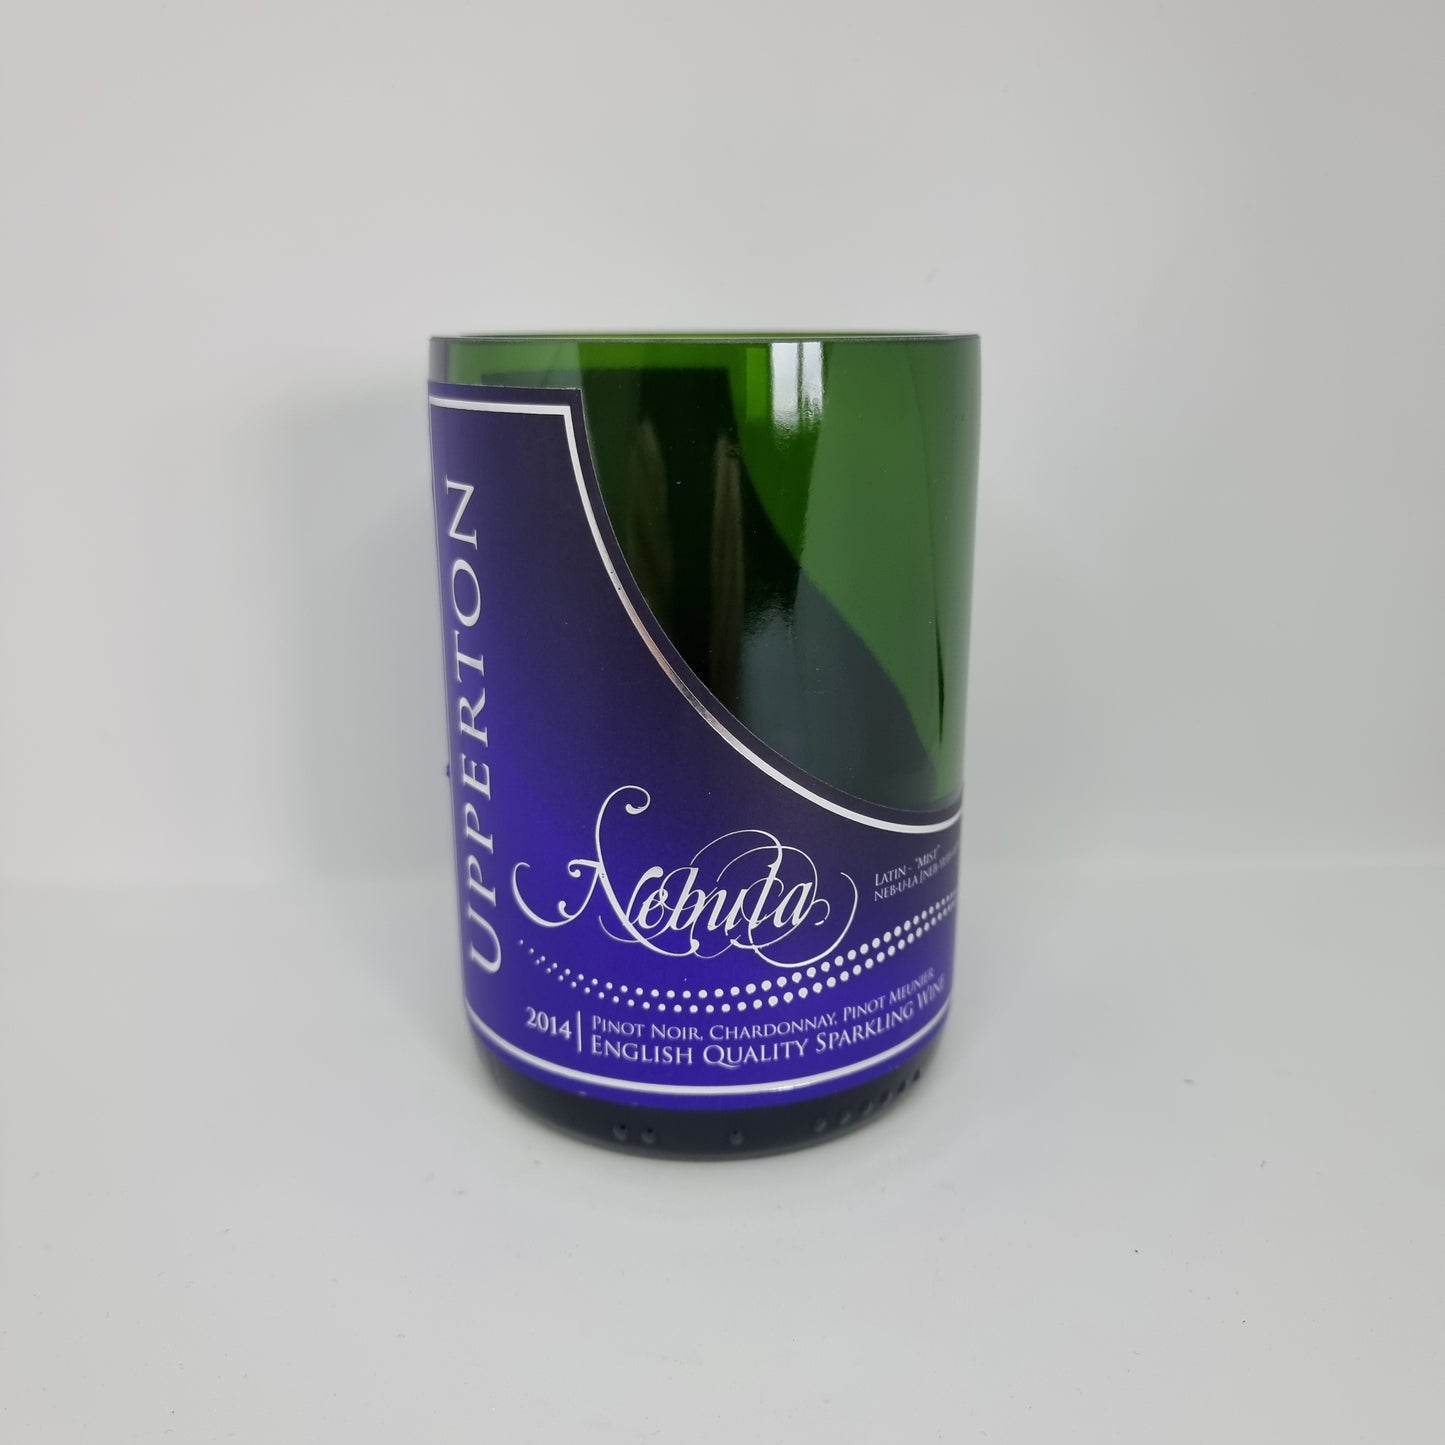 Upperton Nebula Sparkling Wine Bottle Candle